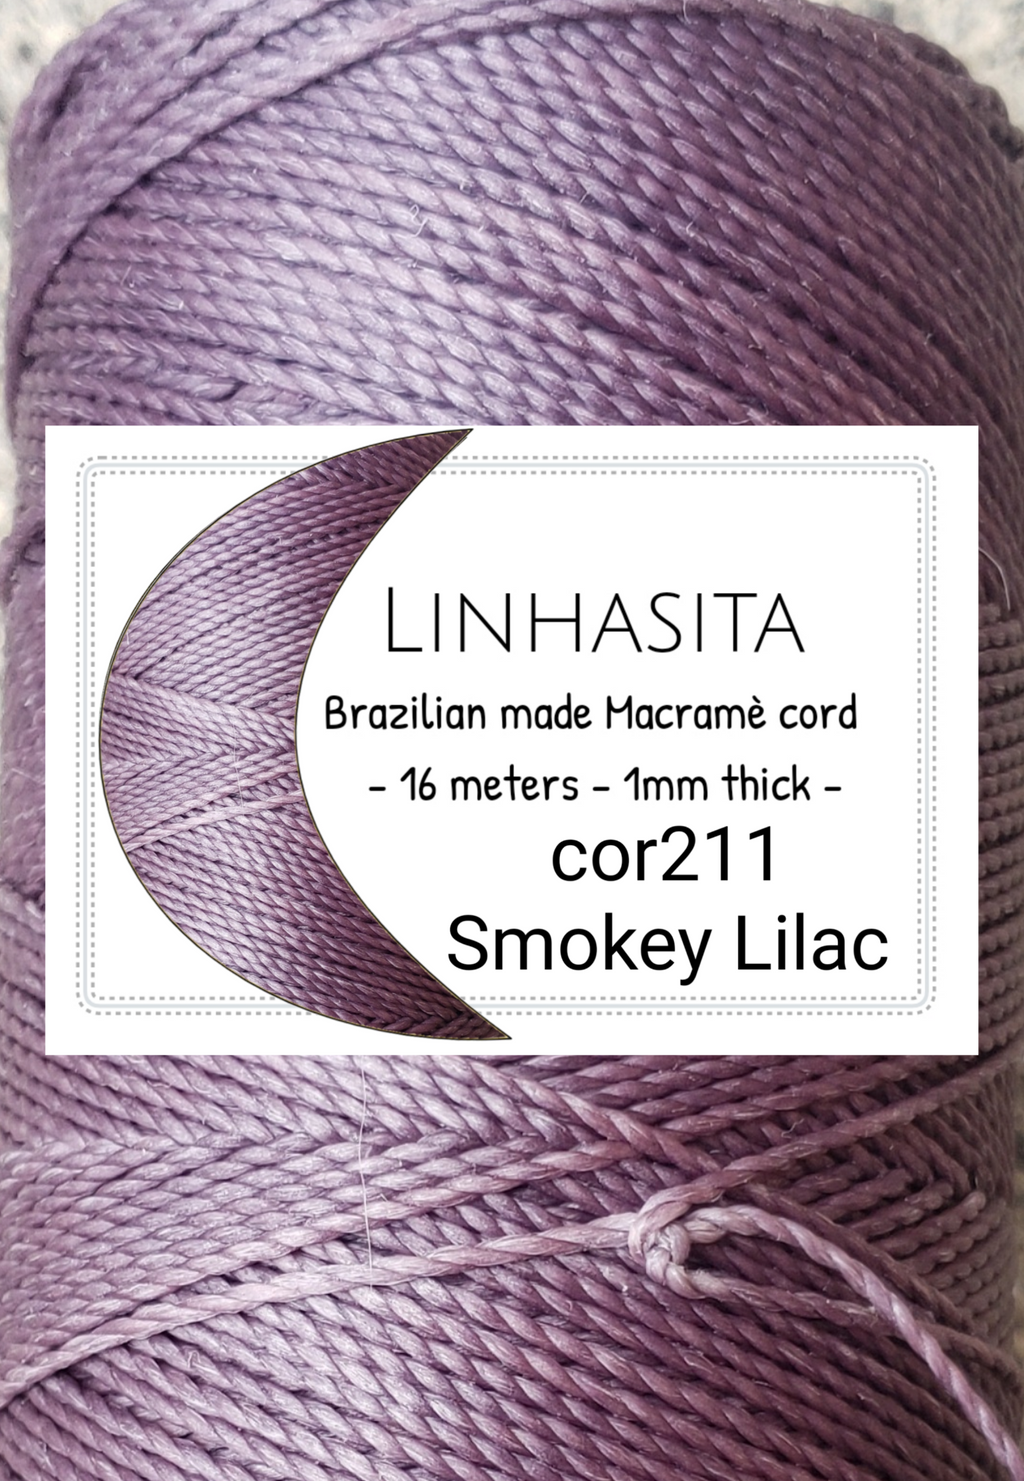 Linhasita cor211 - Smokey Lilac  - 1mm - 16 meters